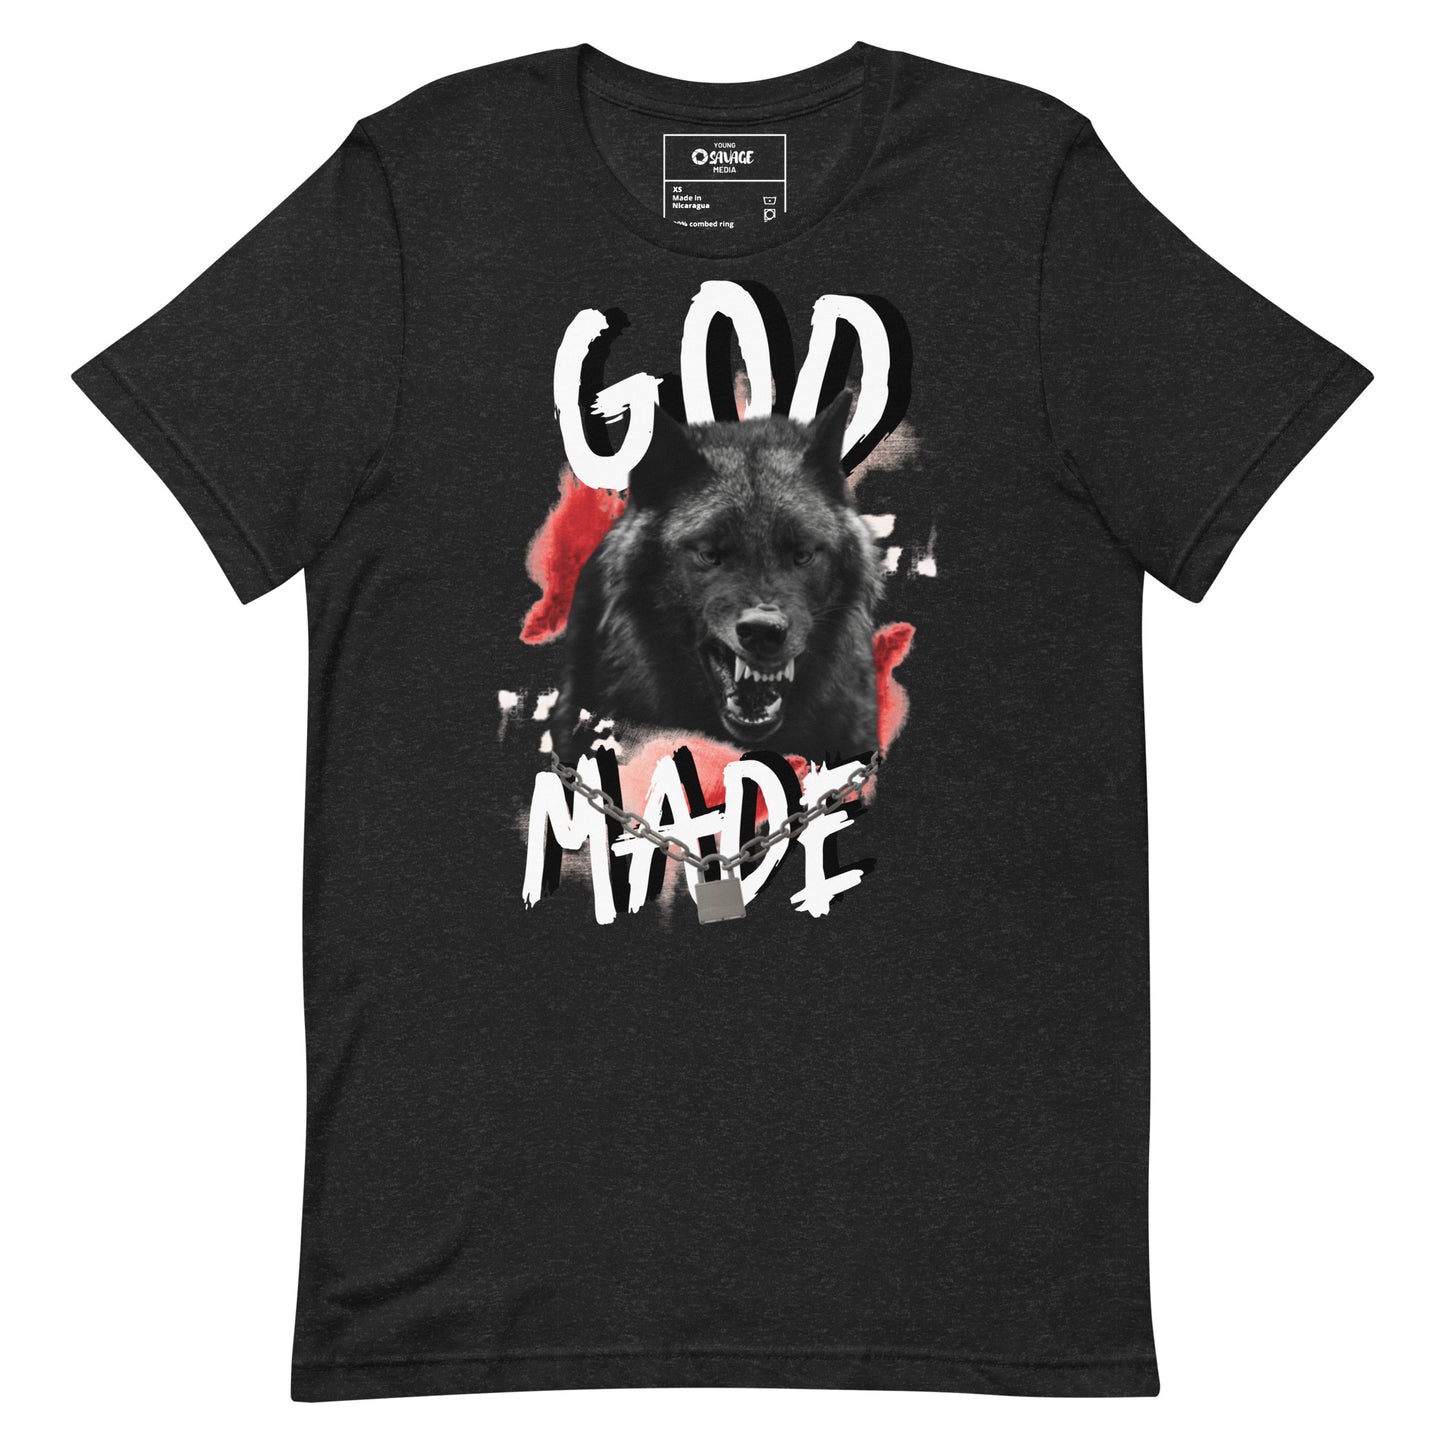 God Made - Unisex t-shirt